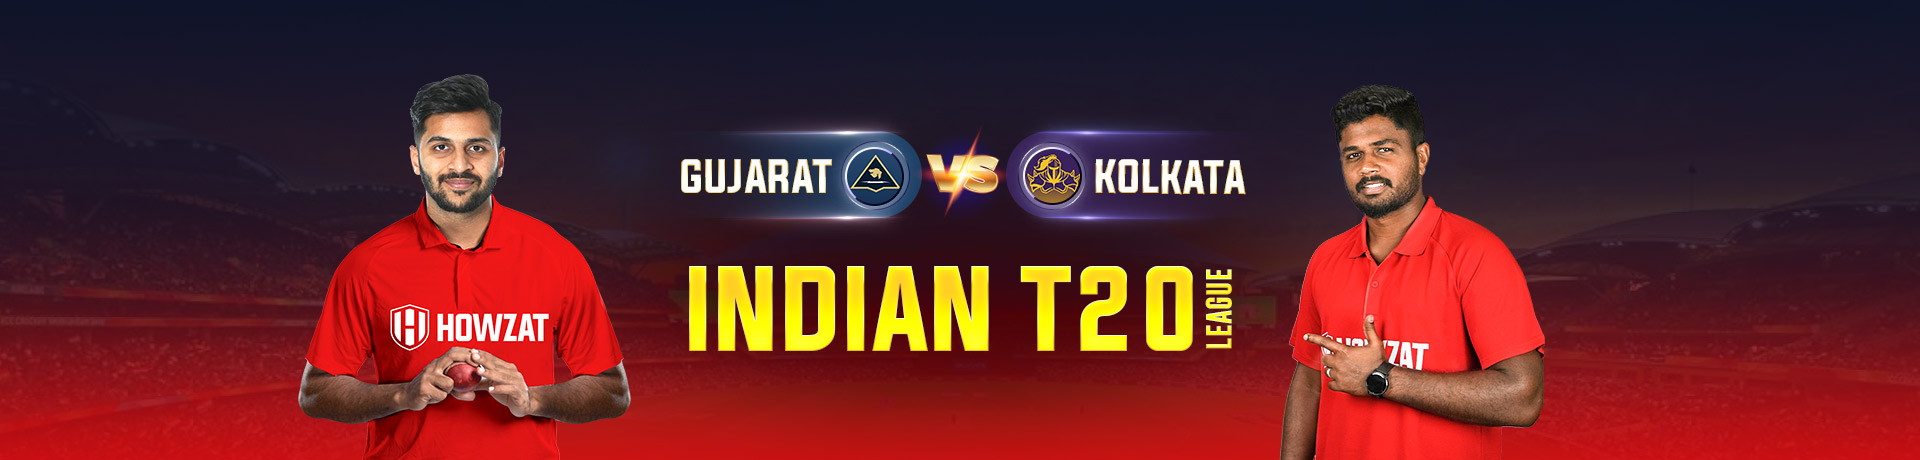 Gujarat vs Kolkata